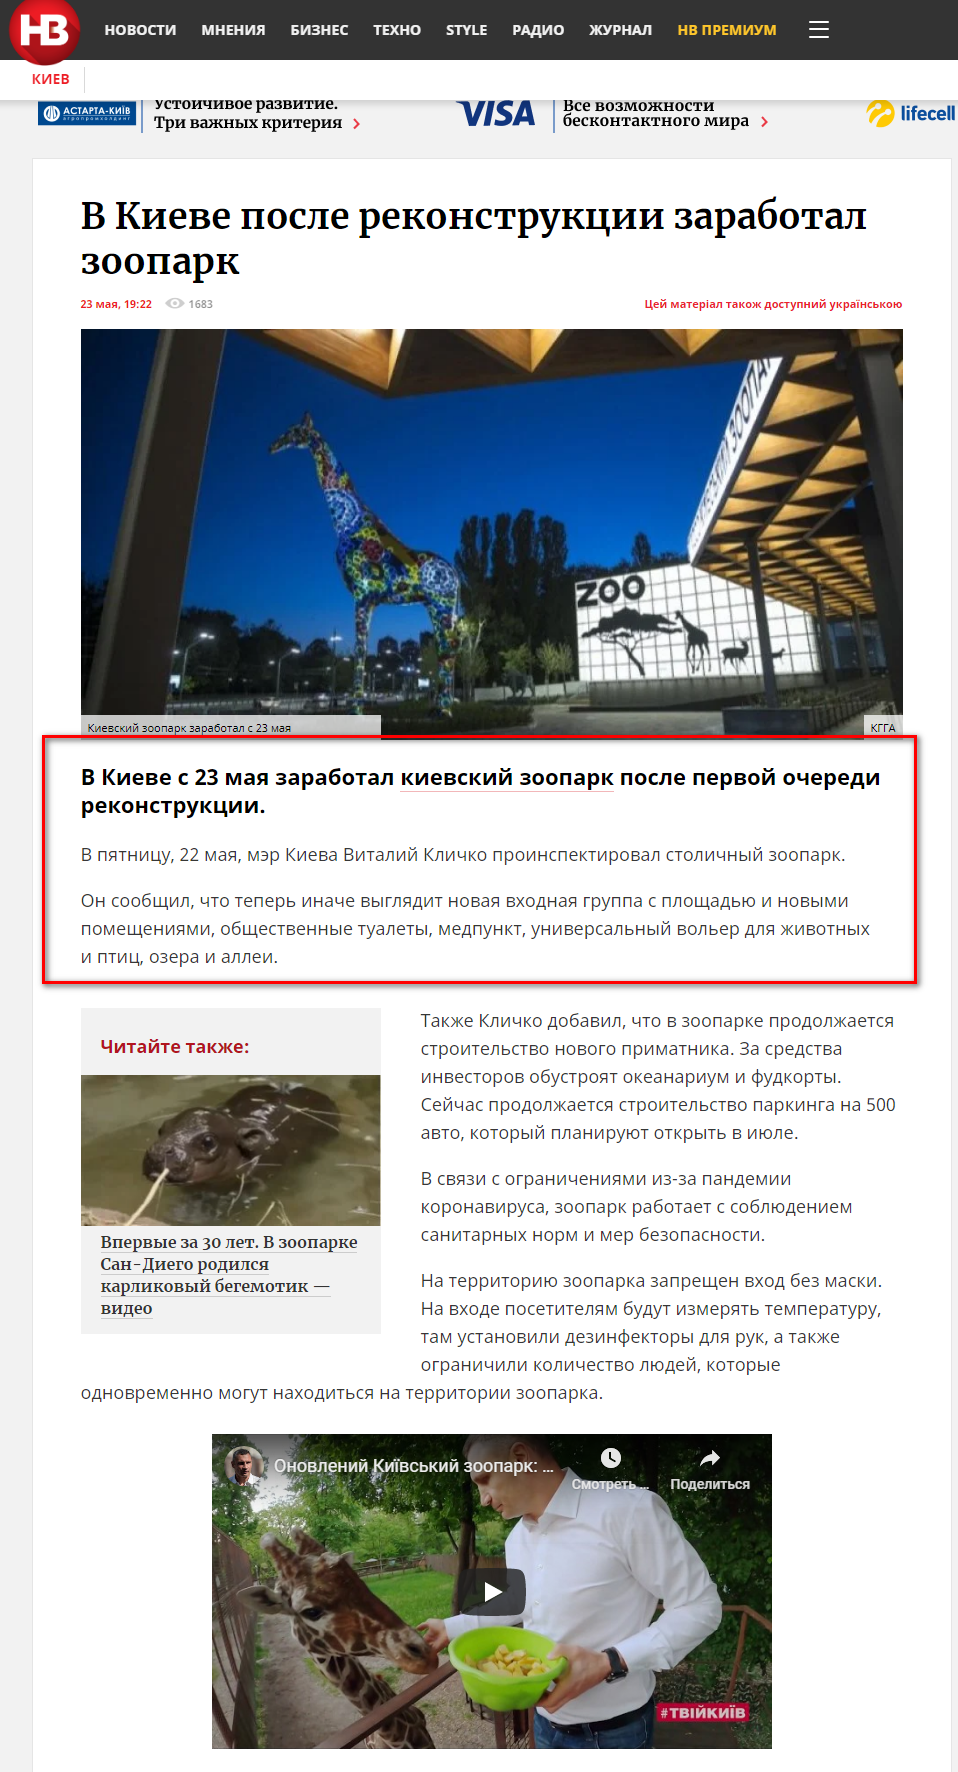 https://nv.ua/kyiv/zoopark-v-kieve-zarabotal-posle-rekonstrukcii-novosti-kieva-50089954.html